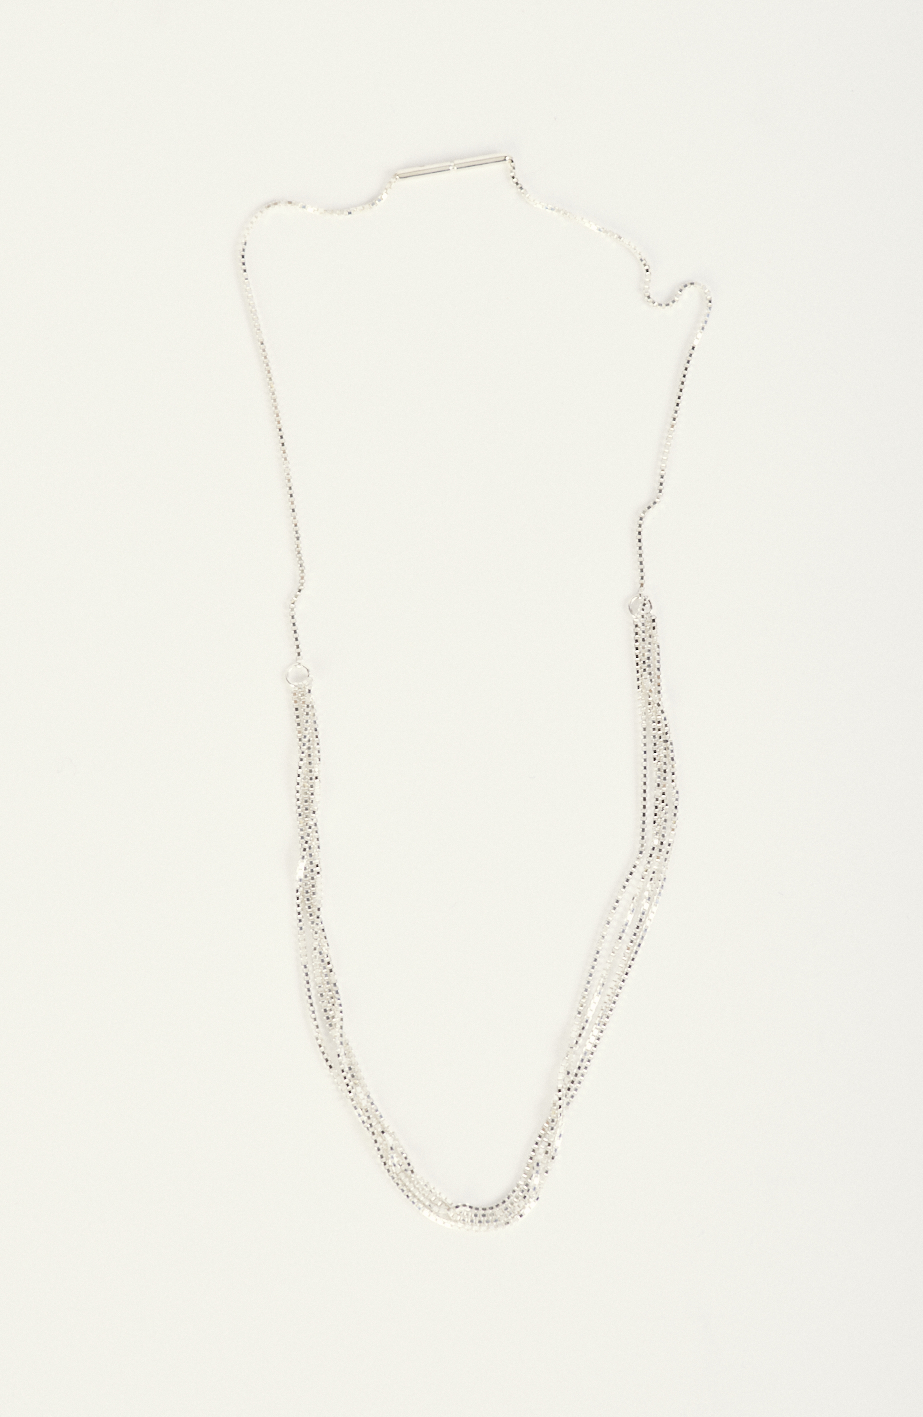 Chain "Fine 4 Line" in silver